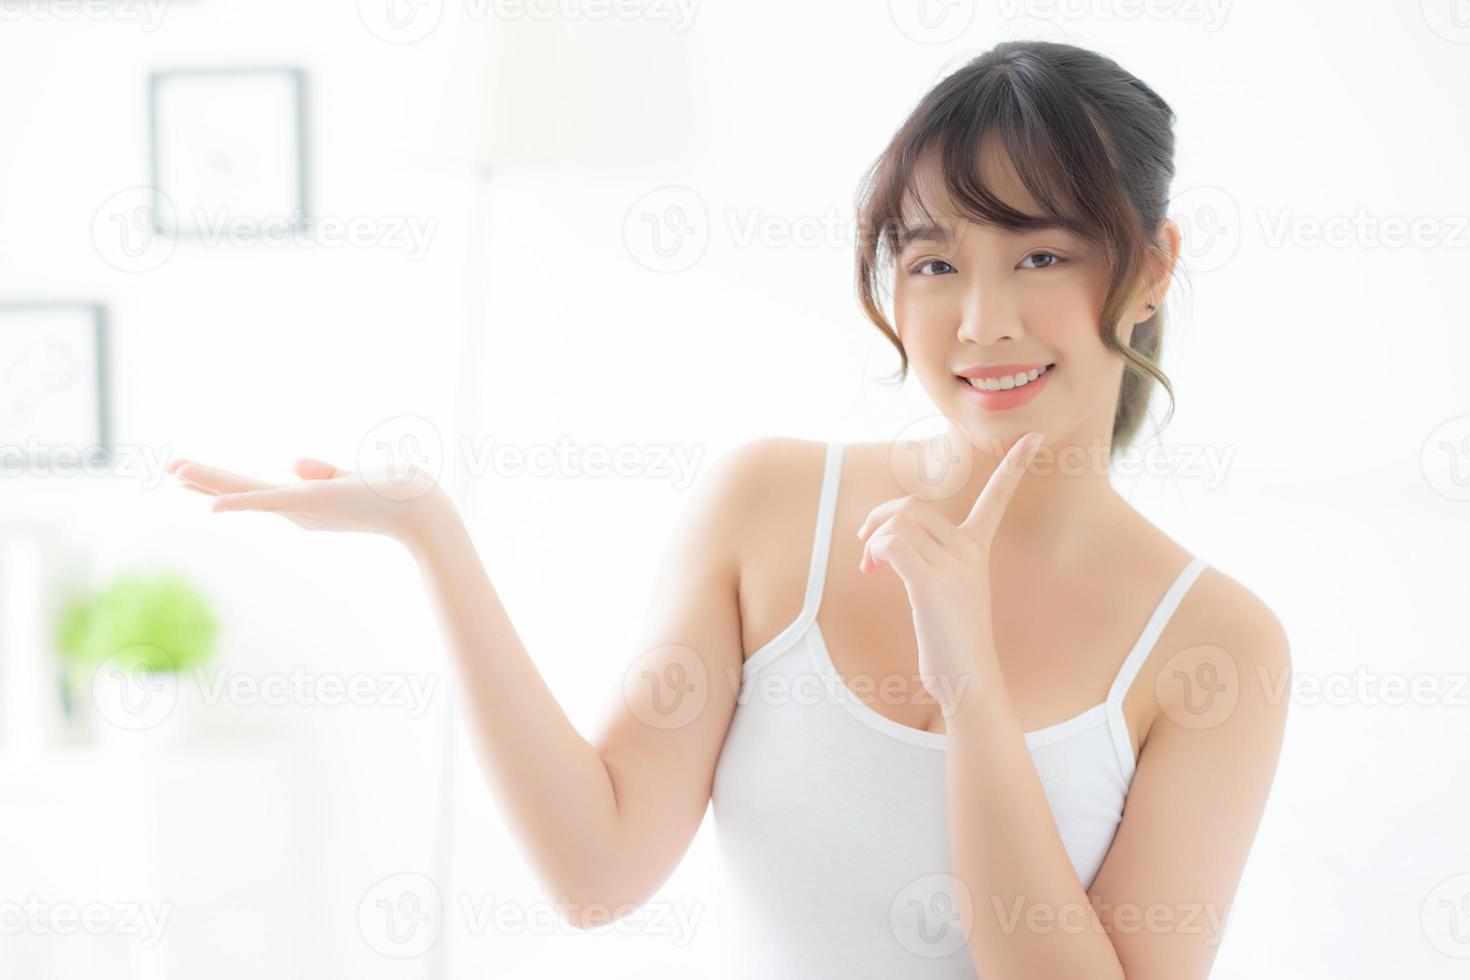 bella giovane donna asiatica che sorride e mostra il prodotto per la cura della pelle per la pubblicità in camera da letto, ragazza asiatica di bellezza che presenta cosmetici per il trucco per la pubblicità con sorpresa sui palmi in camera. foto